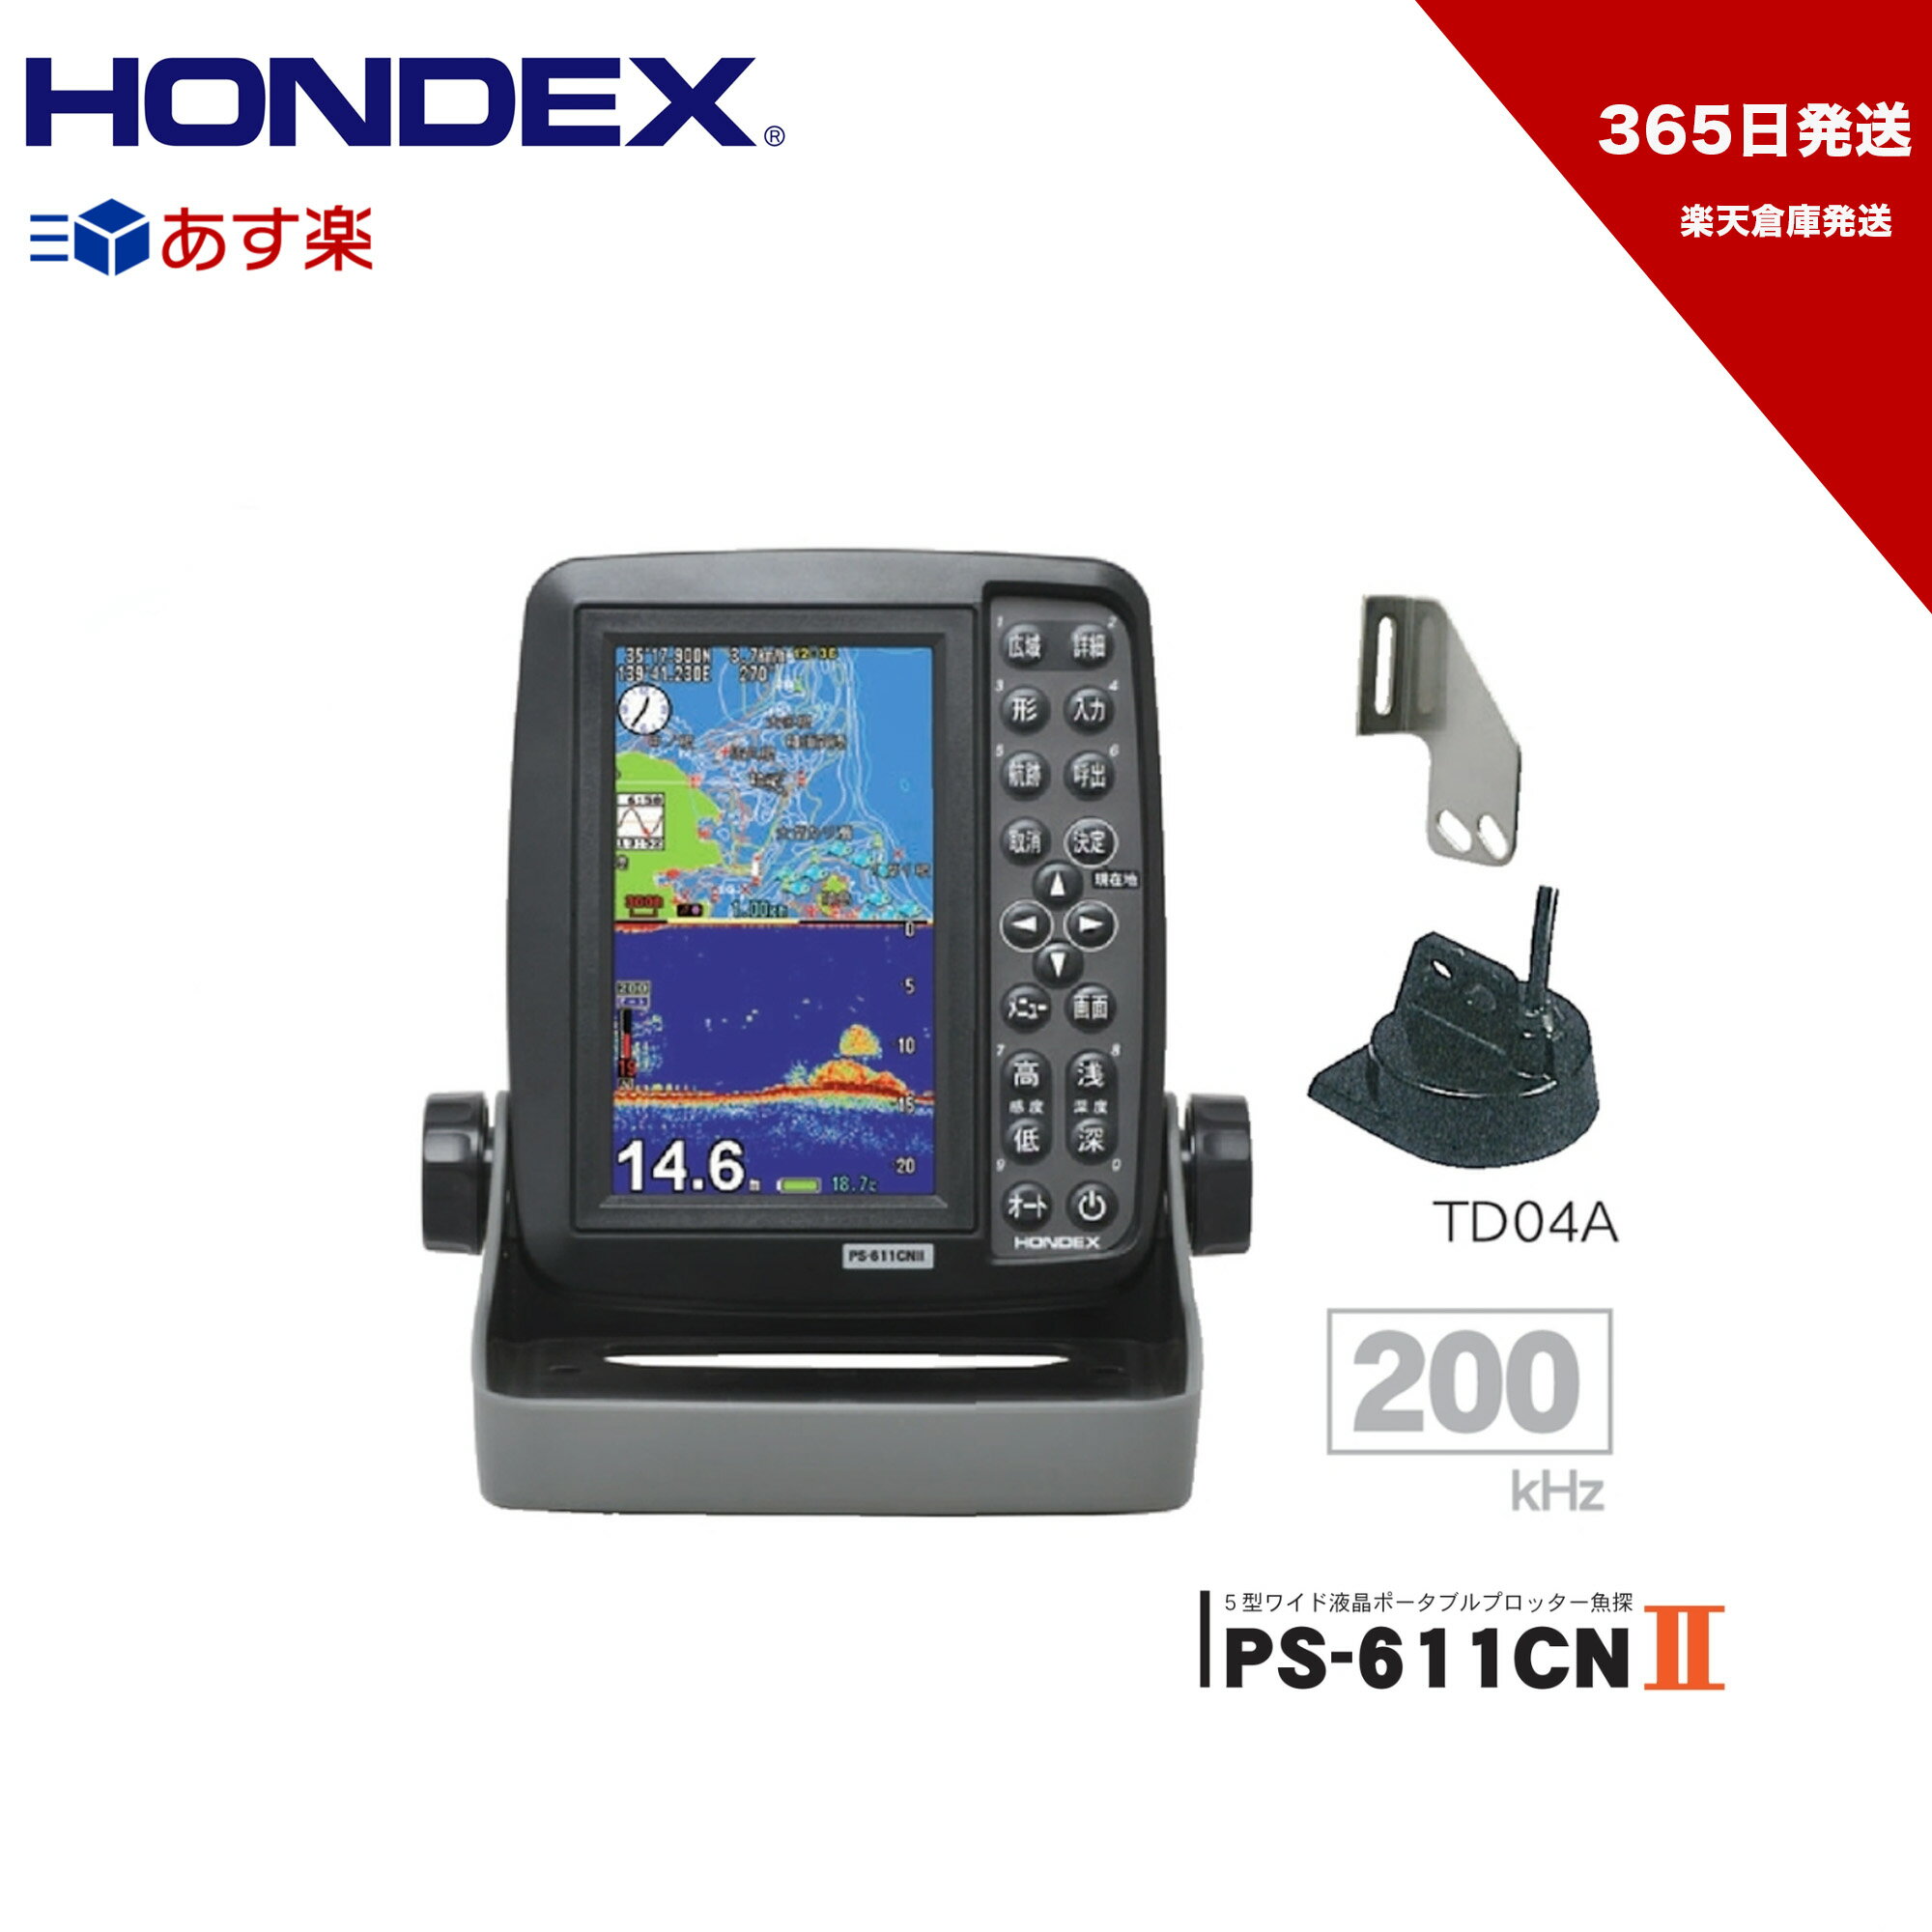 【365日発送】HONDEX ■PS-611CNII TD04A振動子 5型ワイド液晶 魚探 魚群探知機 GPS内蔵 ホンデックス 本多電子 機械屋 あす楽【送料無料 365日発送】